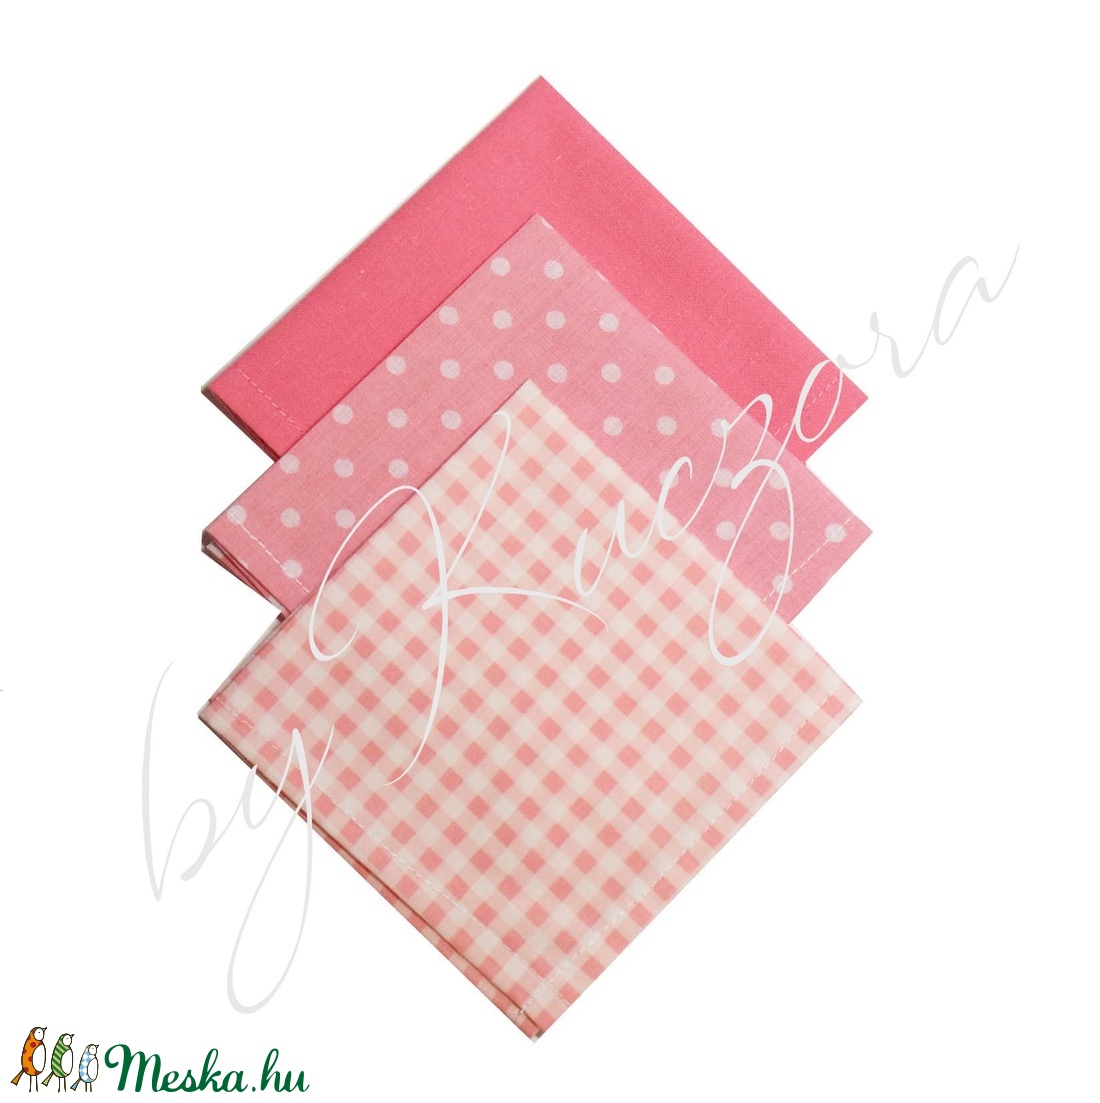 Textil zsebkendő szett, öko zsebkendő szett - rózsaszín - táska & tok - pénztárca & más tok - zsebkendőtartó tok - Meska.hu